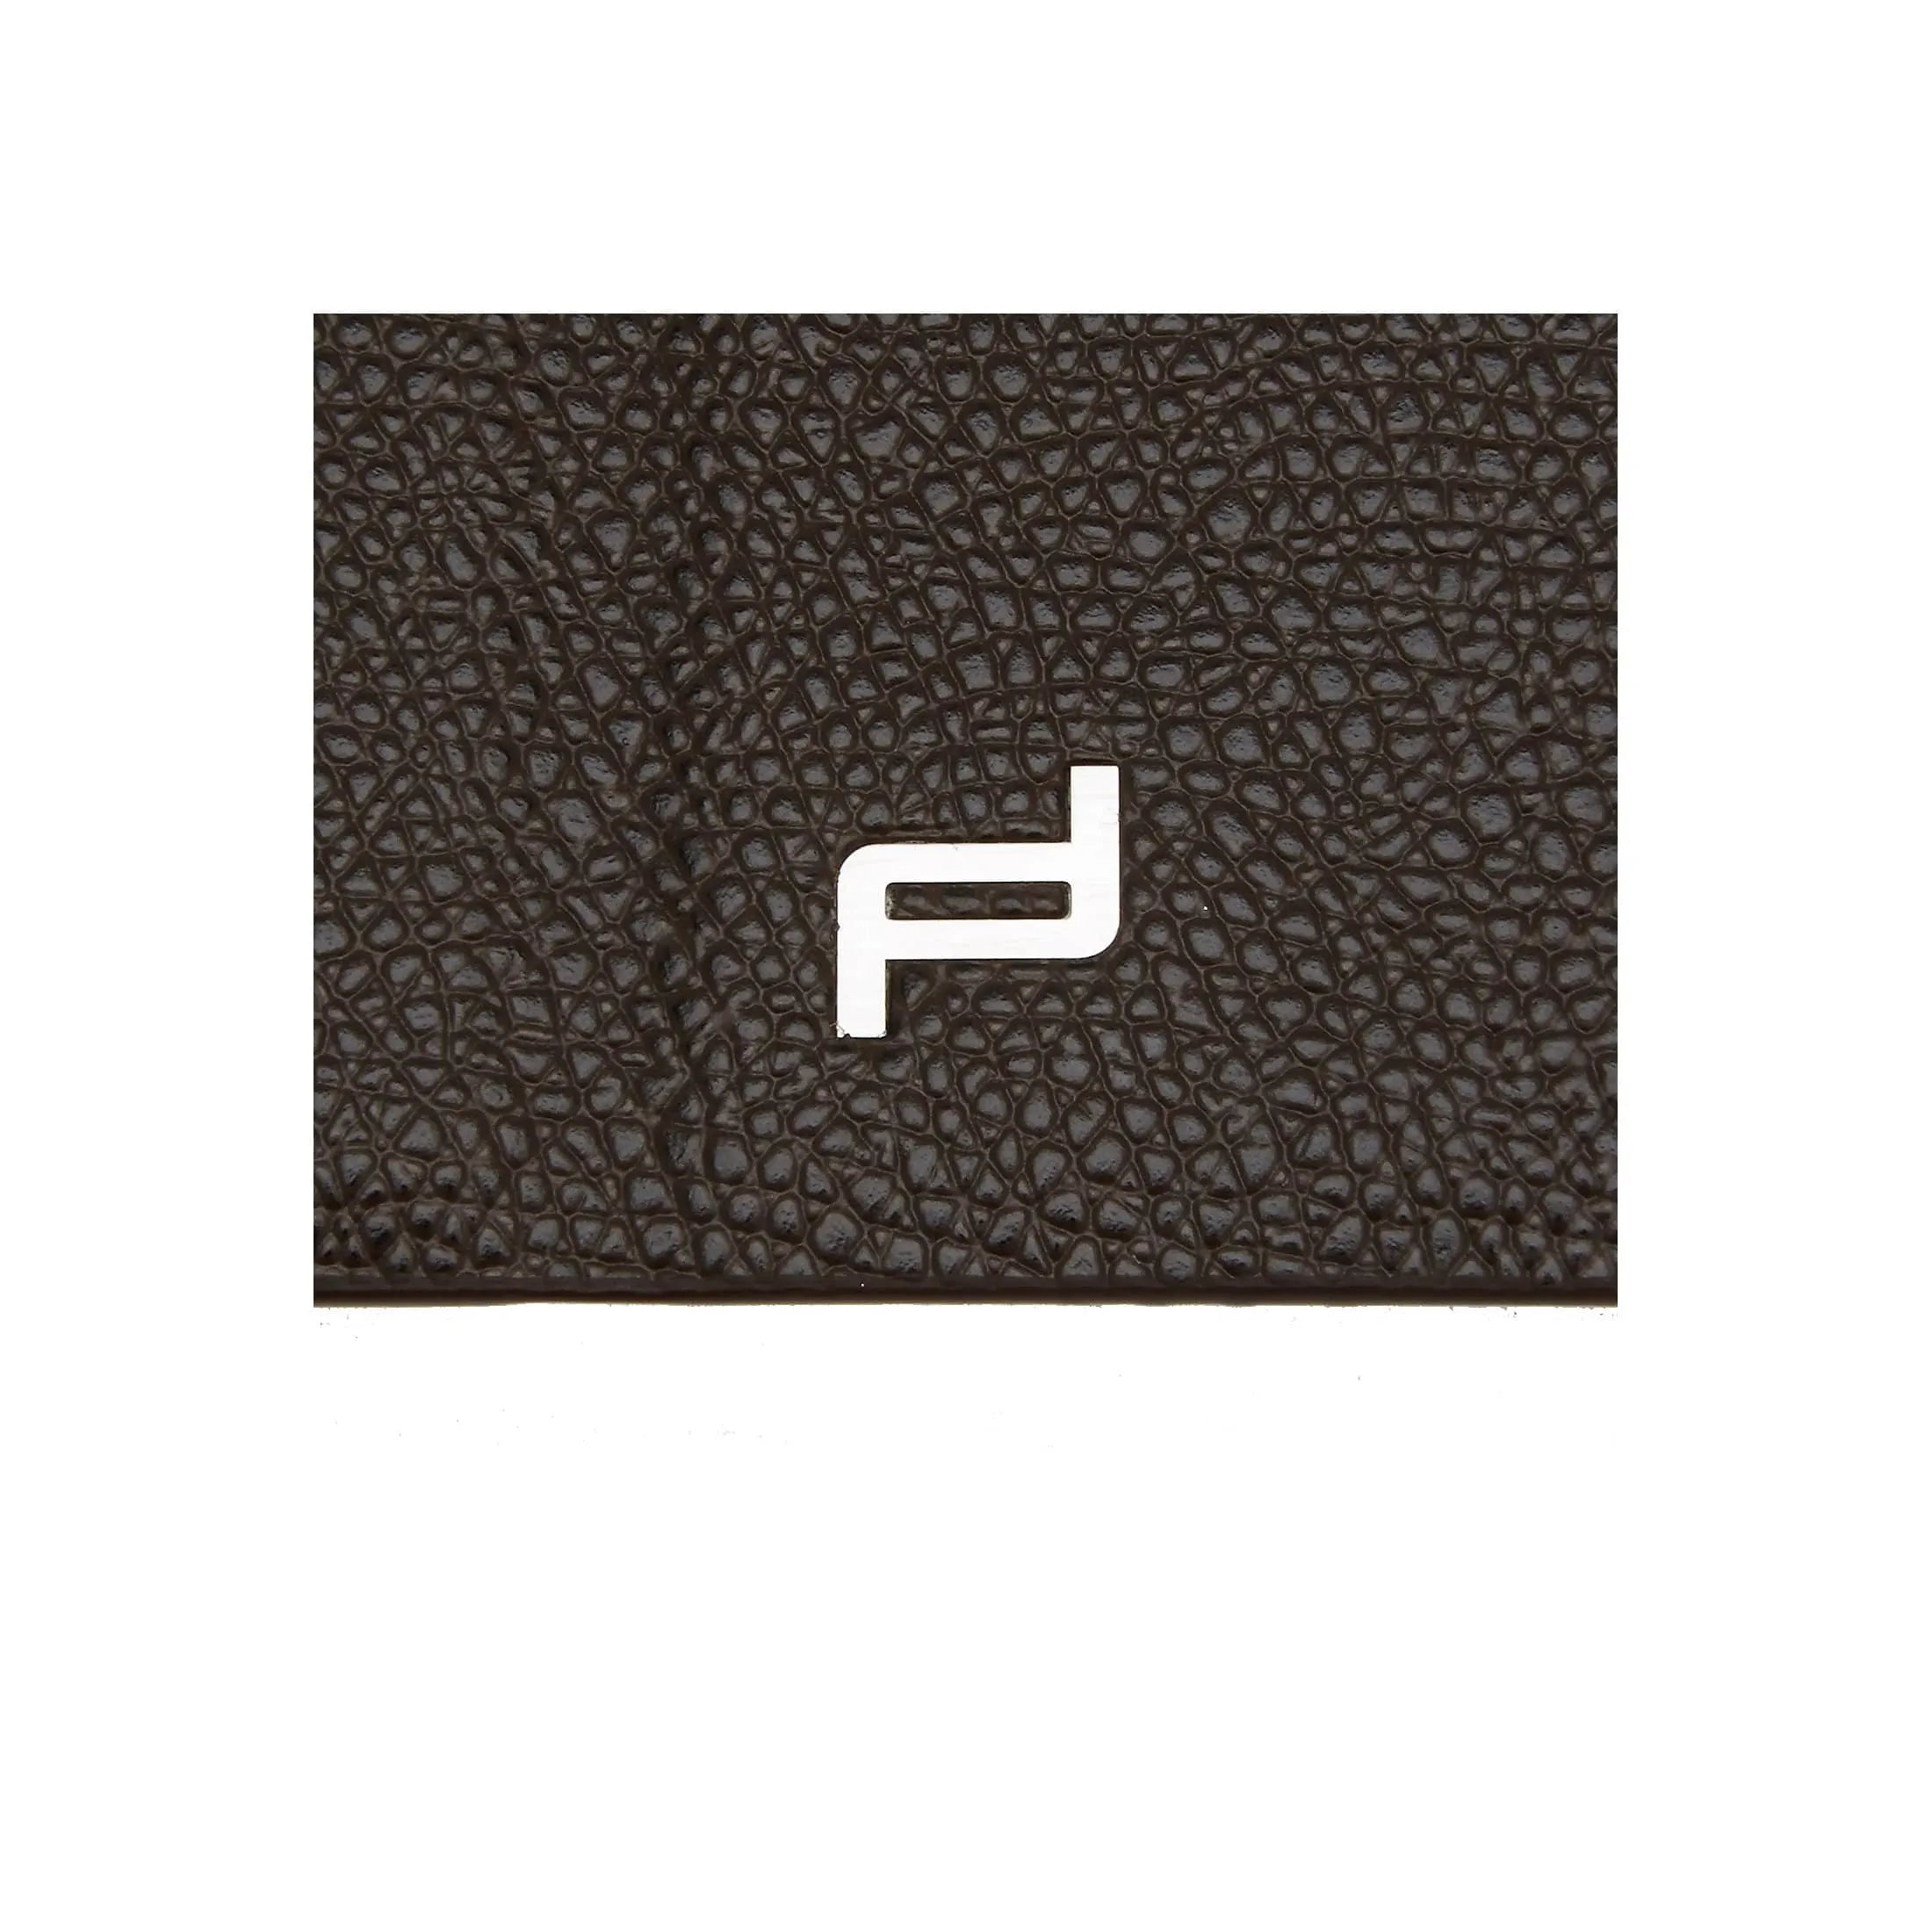 Porsche Design French Classic 3.0 Portfolio iPad mini Case 20 cm - dark brown